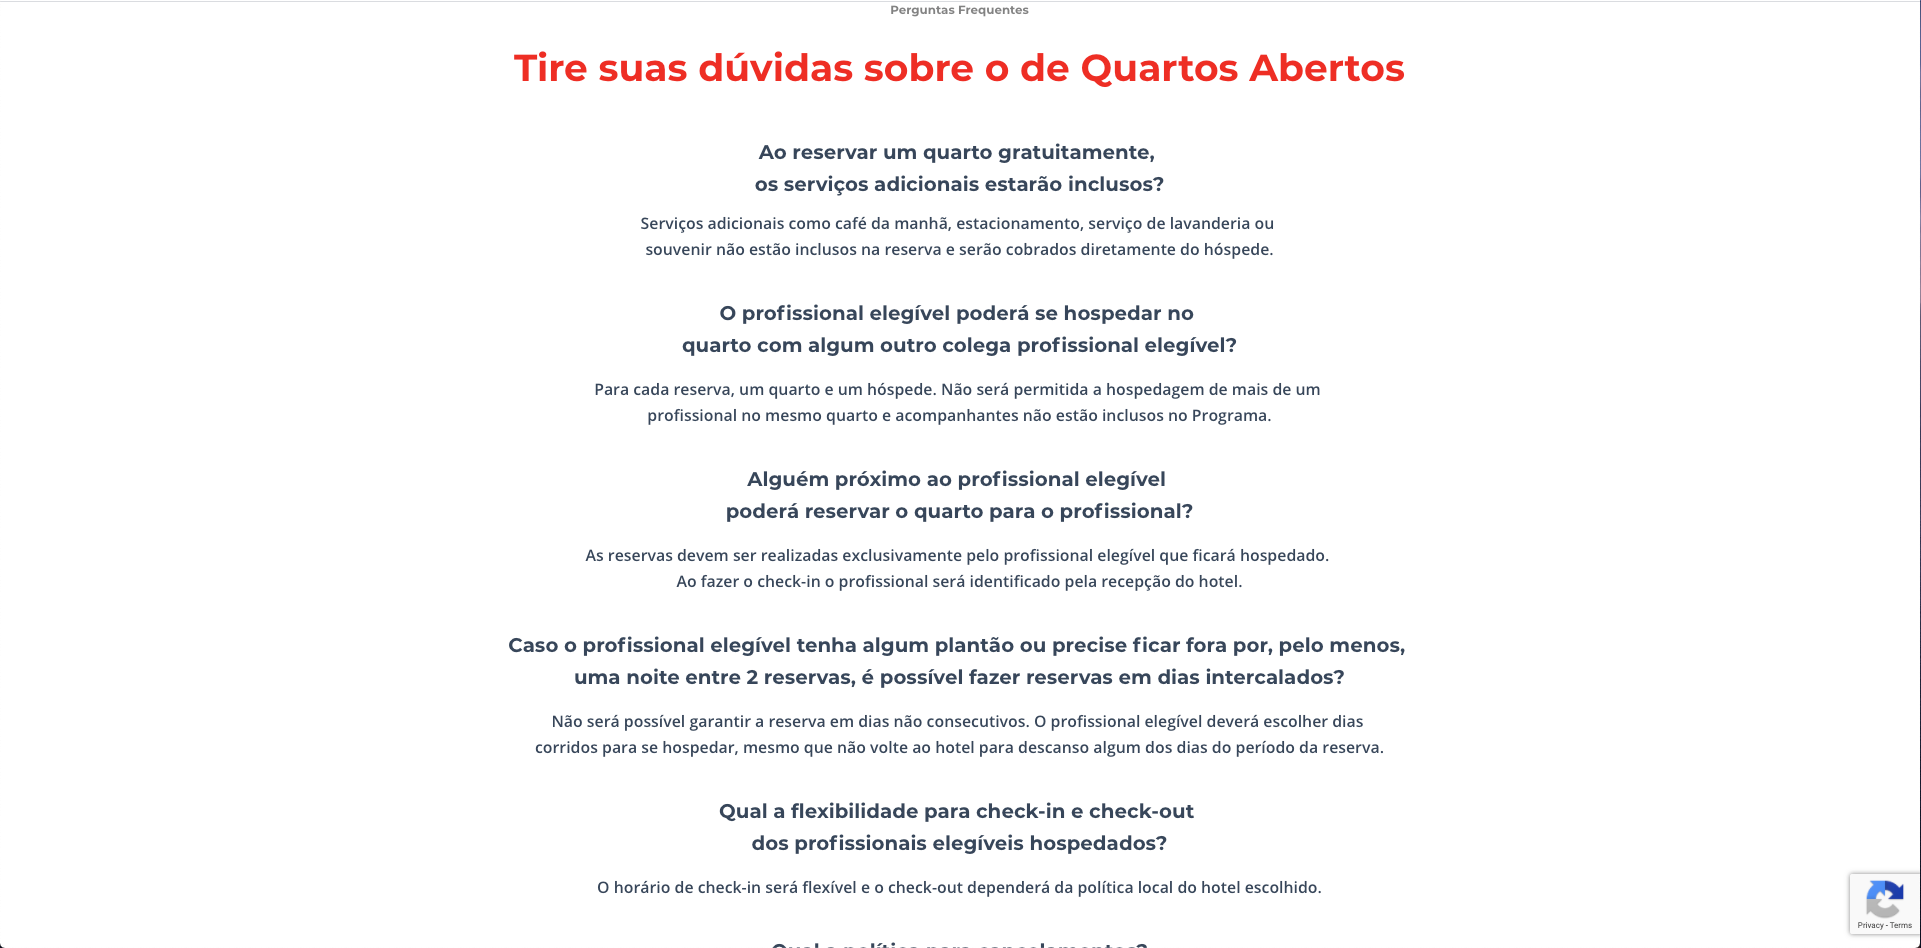 Quartos Abertos - Landing Page 4 (Copy)